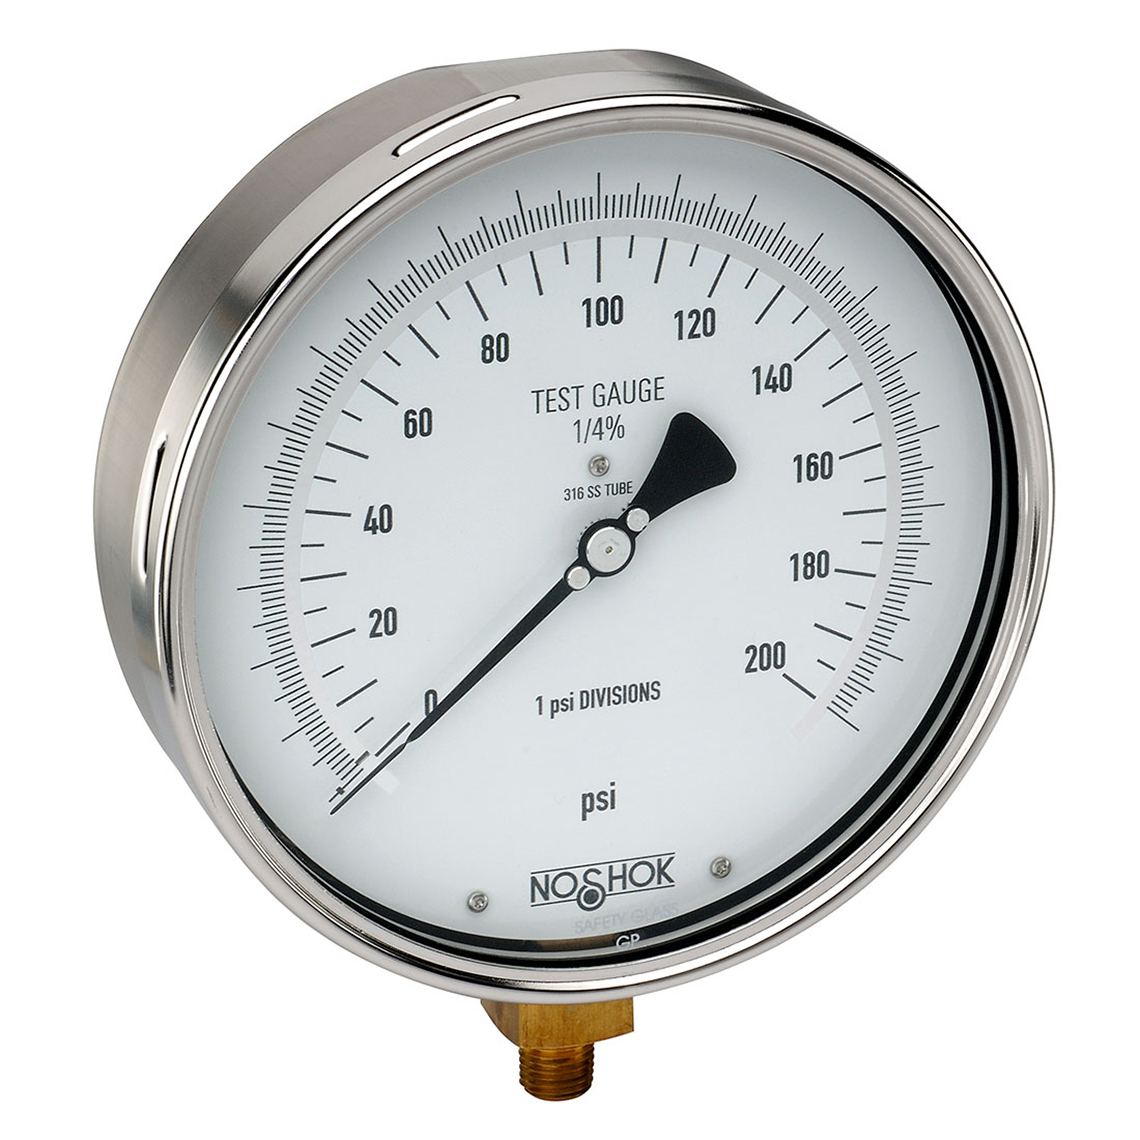 60-800-300-psi 800 Series Precision Test Pressure Gauges